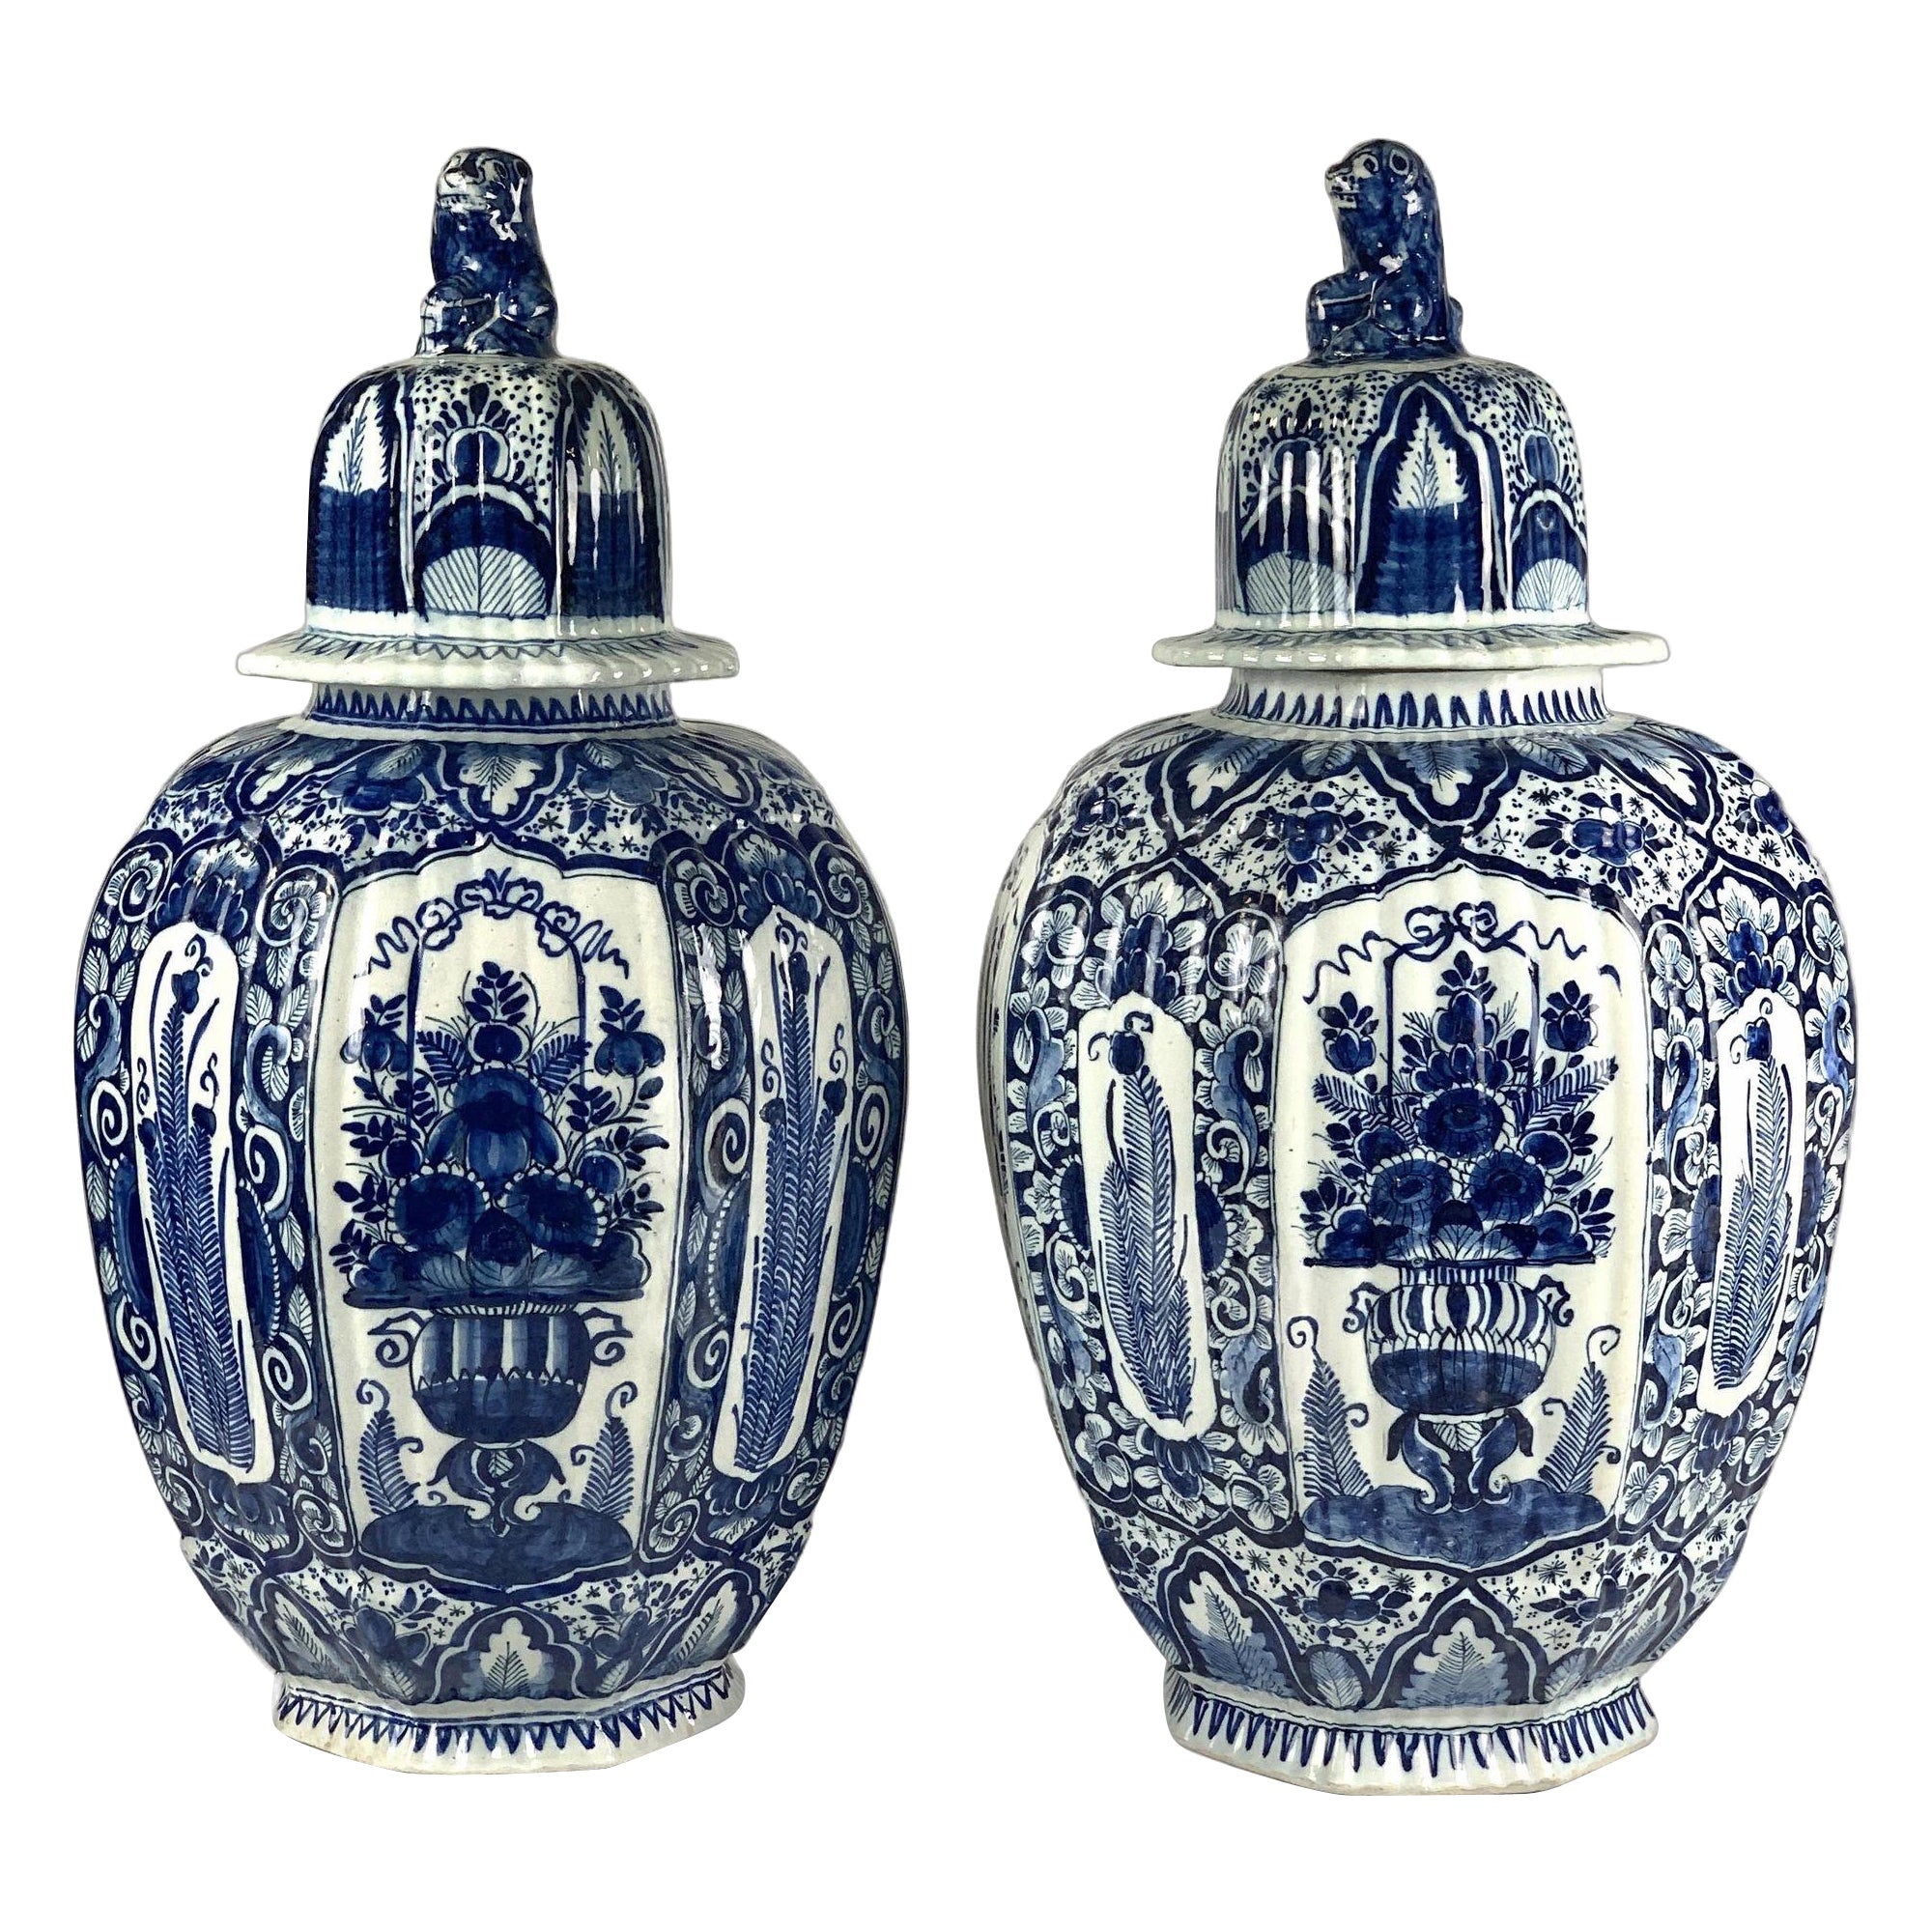 Große blaue und weiße Delft Jars 18. Jahrhundert Niederlande CIRCA 1780